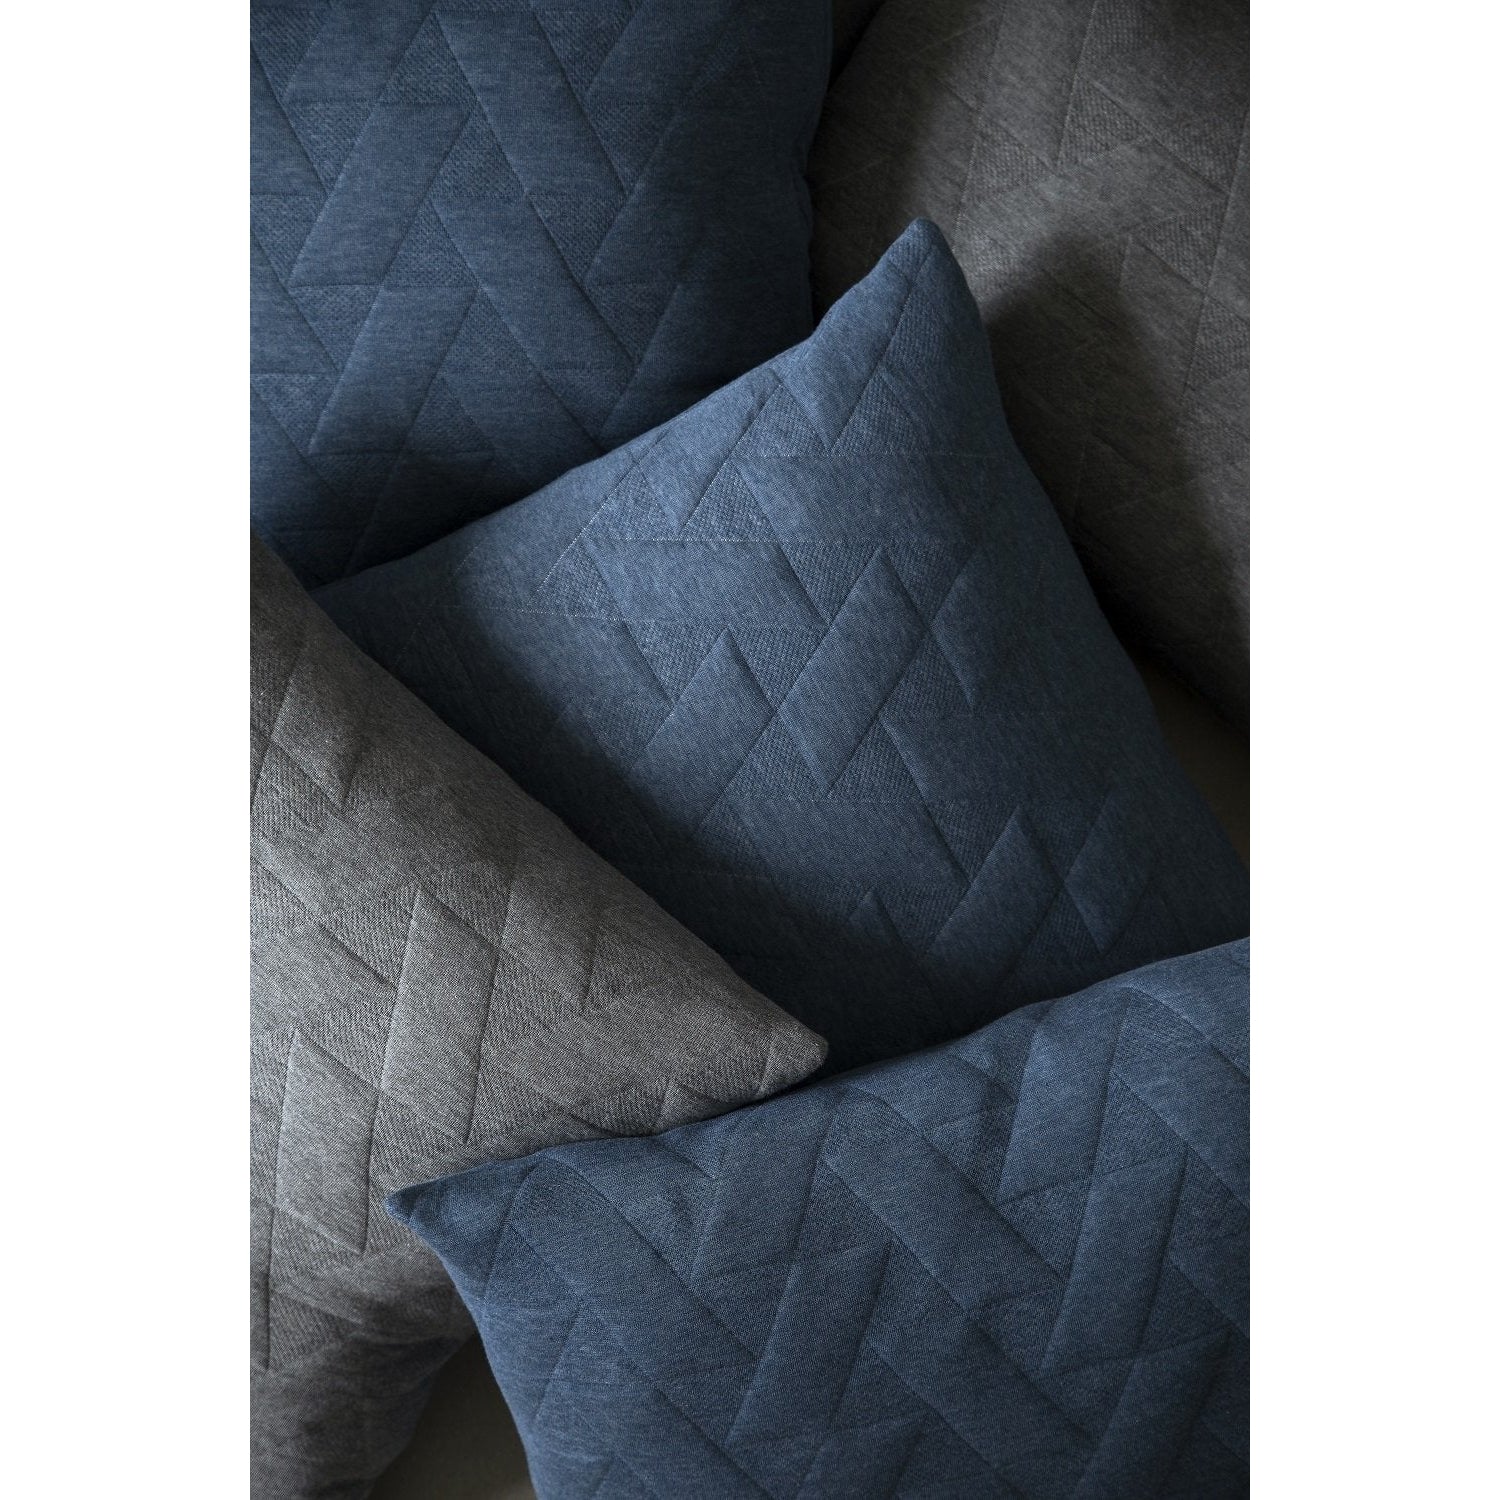 Architectmade Coussin de motif Finn Juhl, gris 40x60